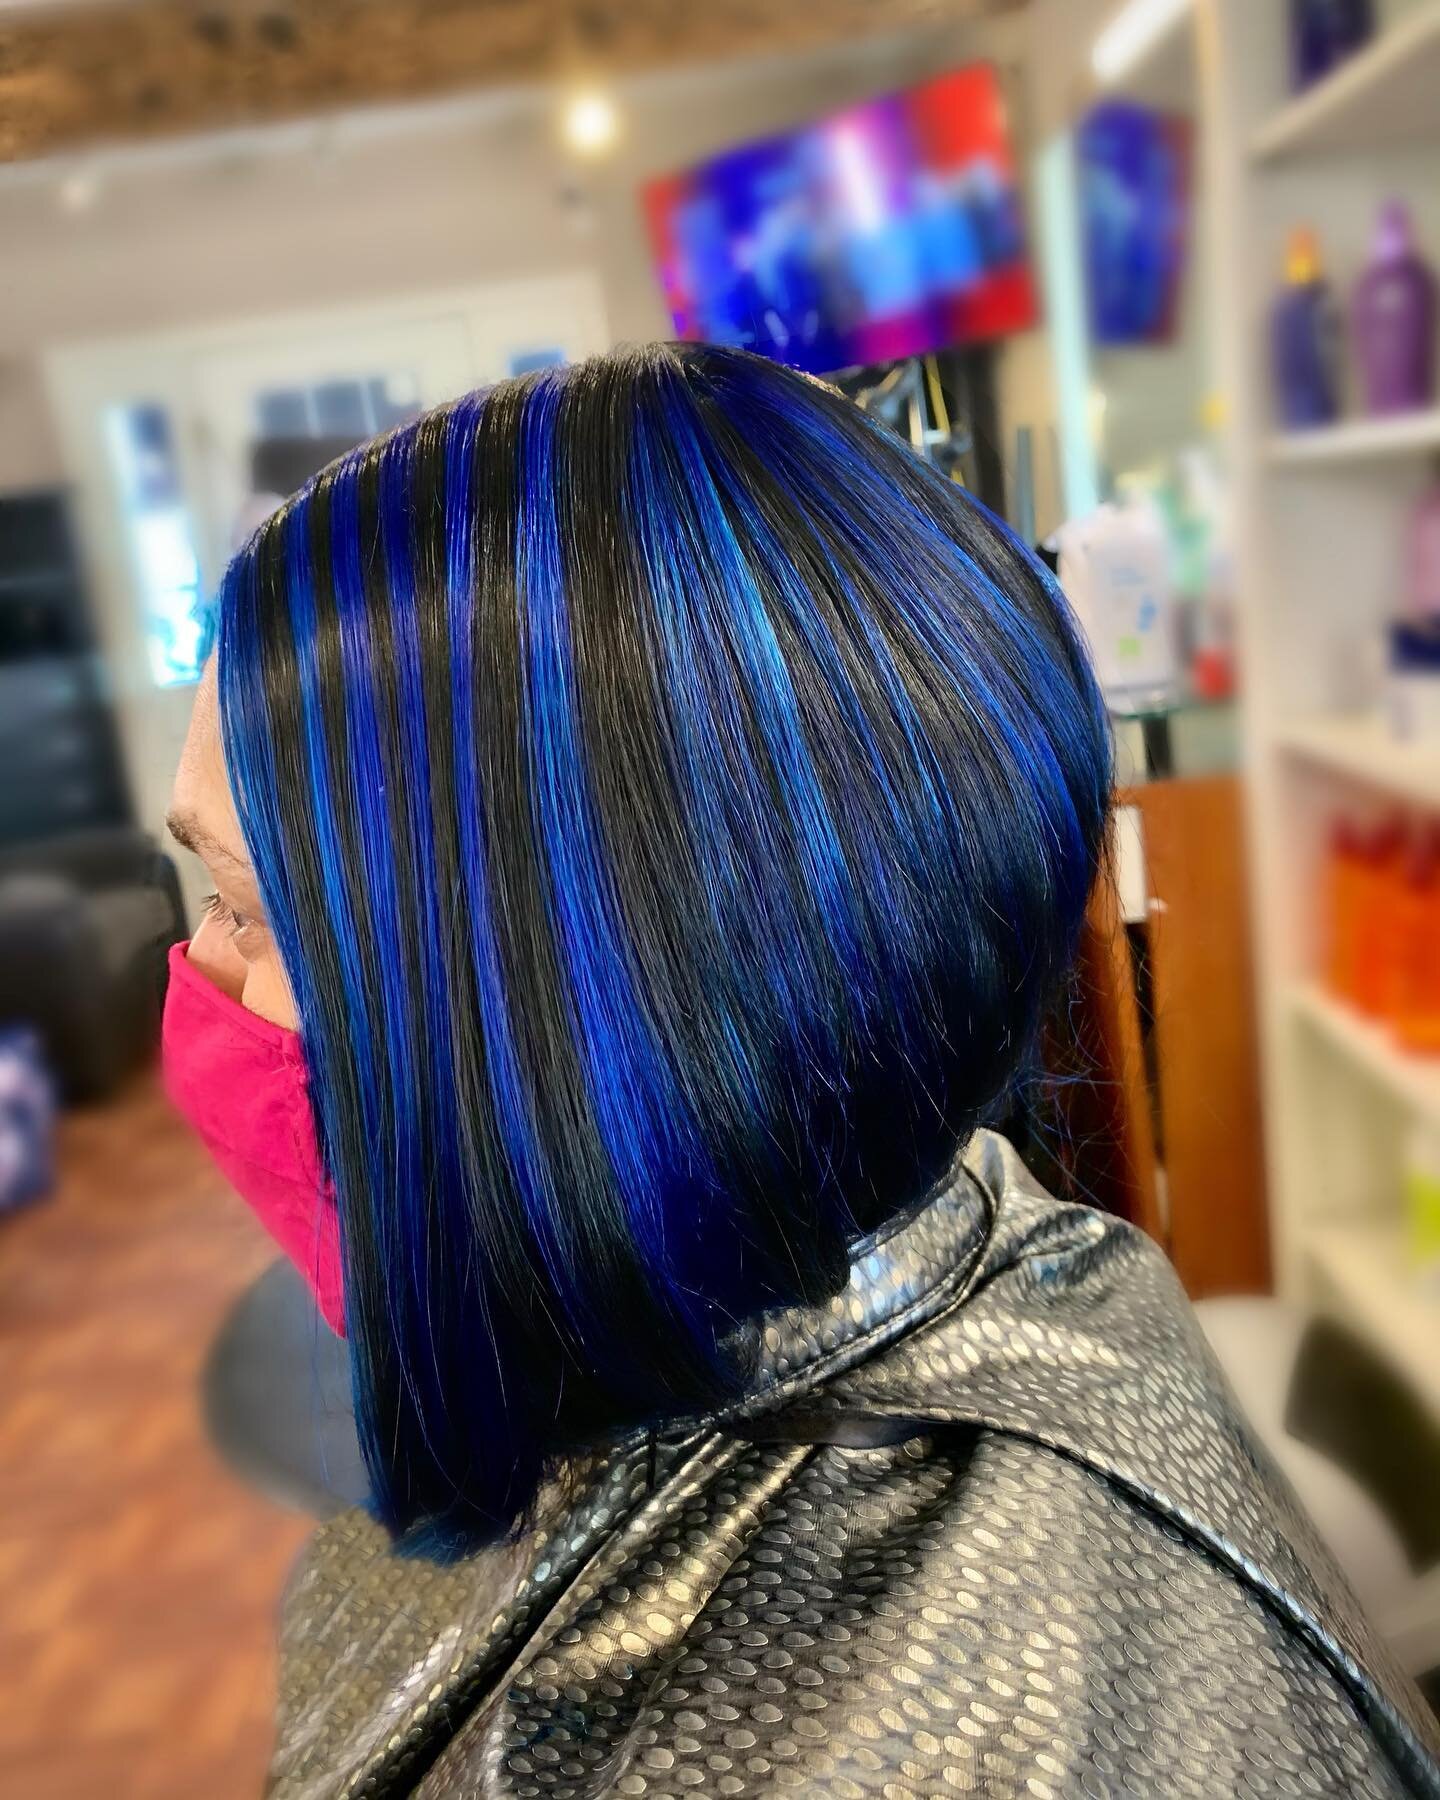 Mother - Daughter Duo🔹👥

#hairstyle #blue #haircolor #colorado #dillon